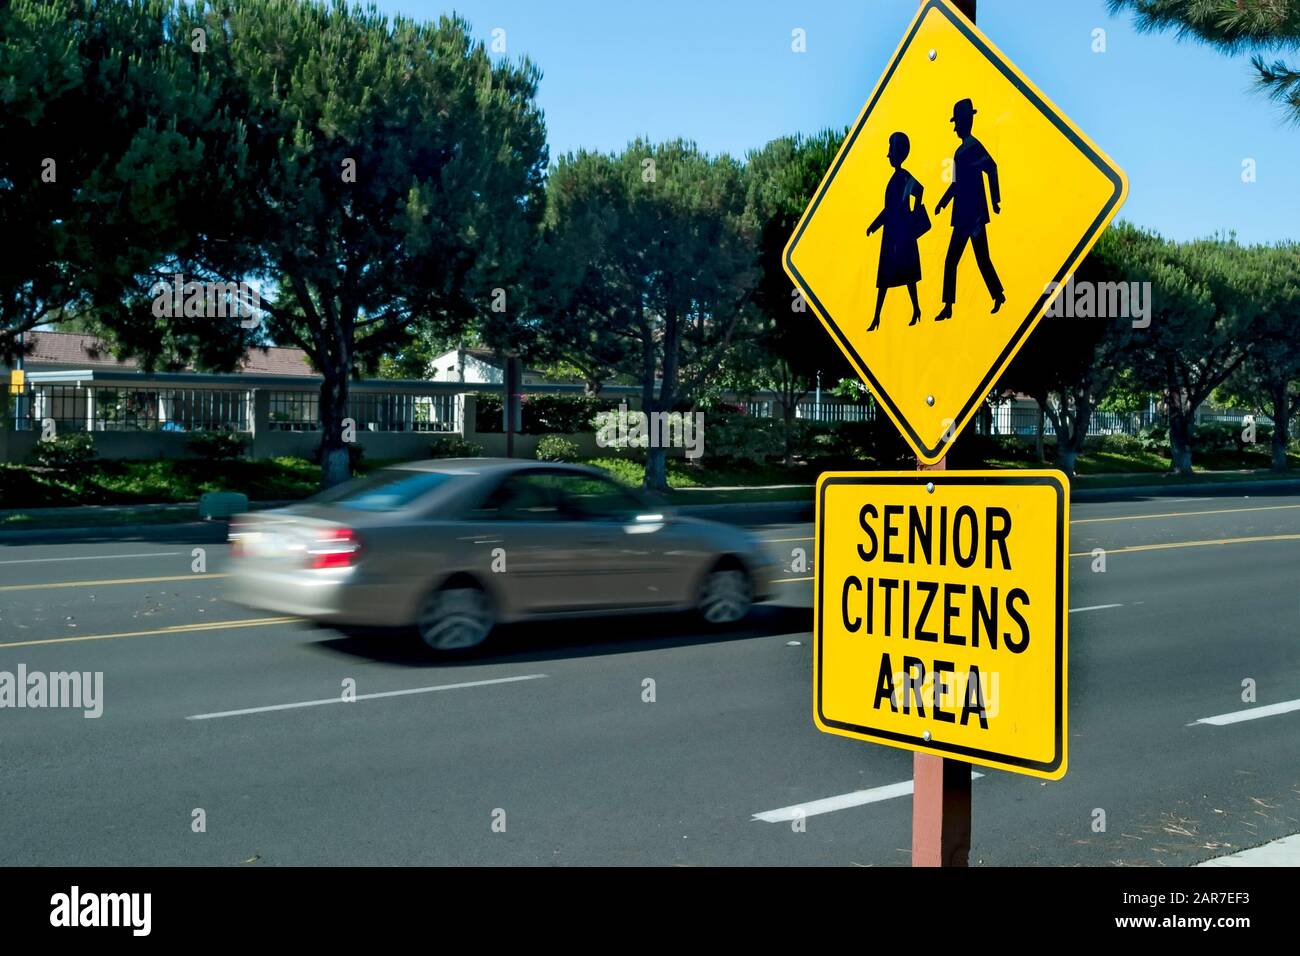 Segnale di traffico giallo che dice Senior Citizens Area con grafica di anziani che camminano . La vettura è sfocata durante la guida in background Foto Stock